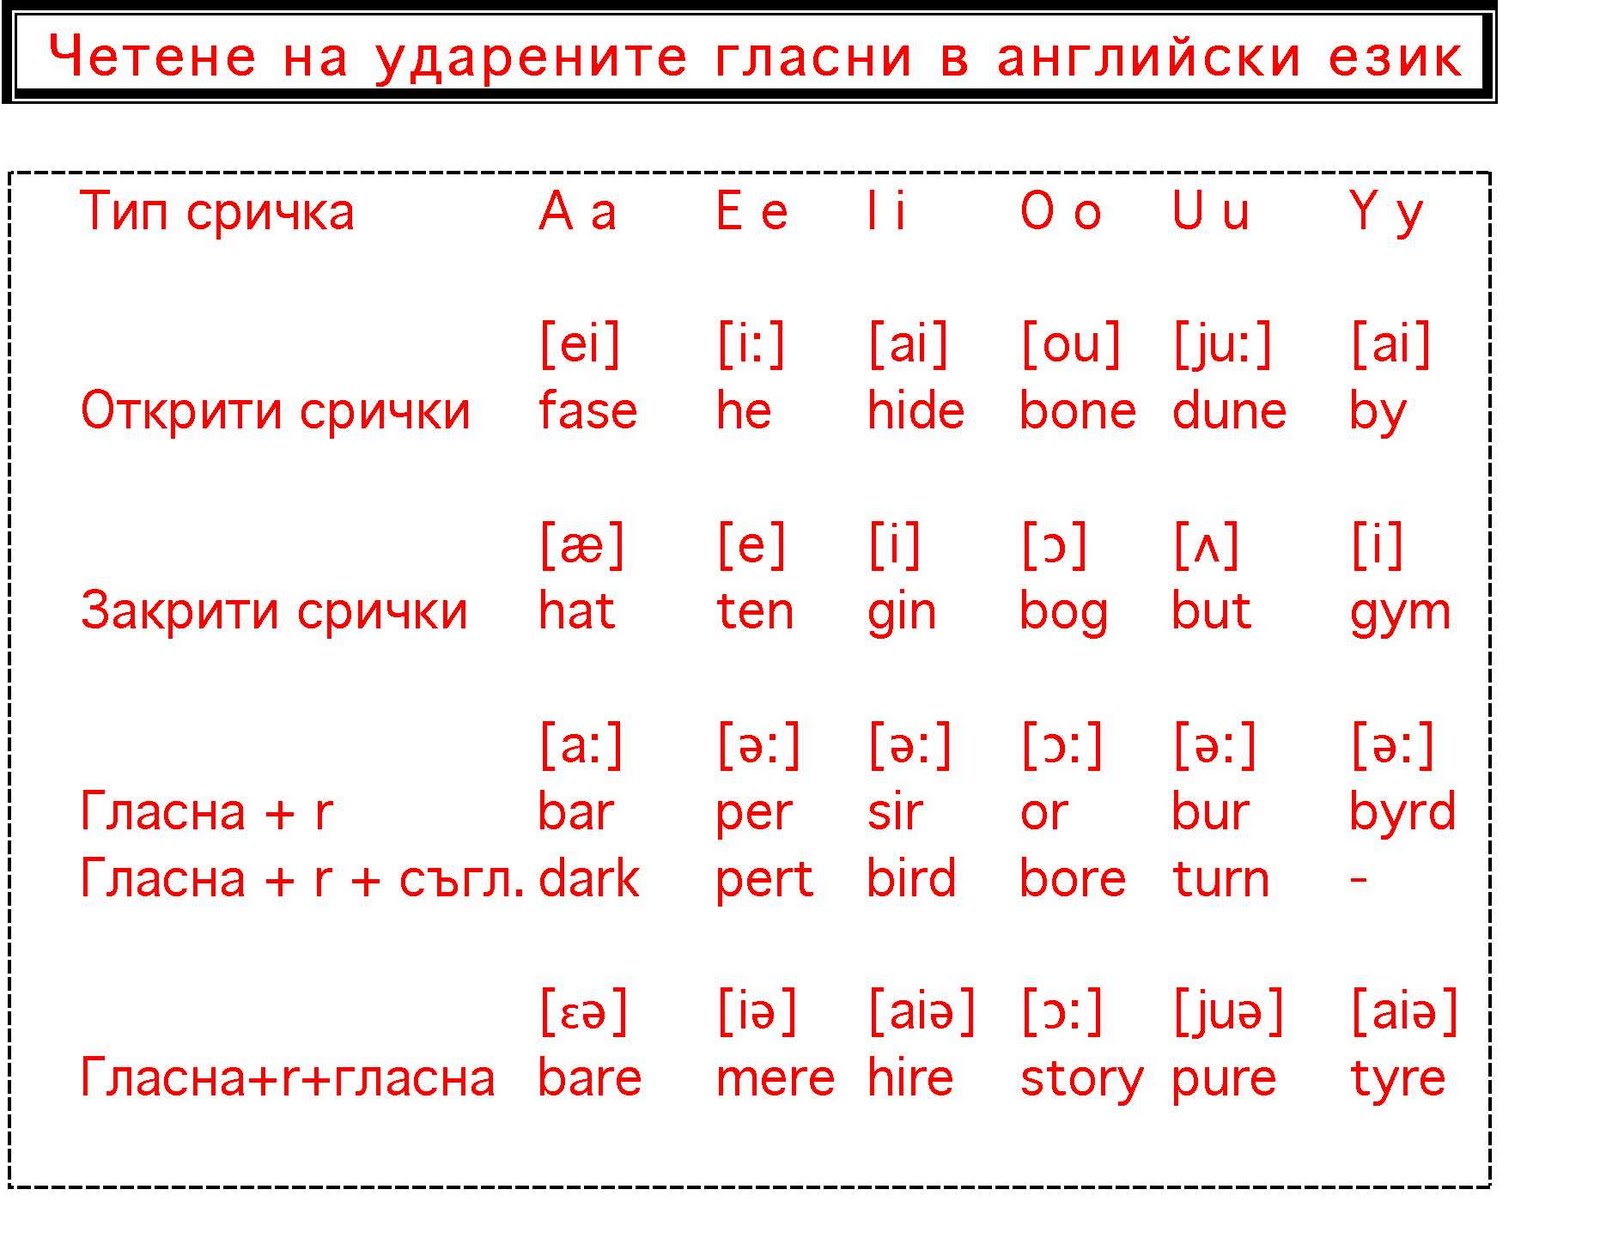 Транскрипция в английском языке произношение на русском